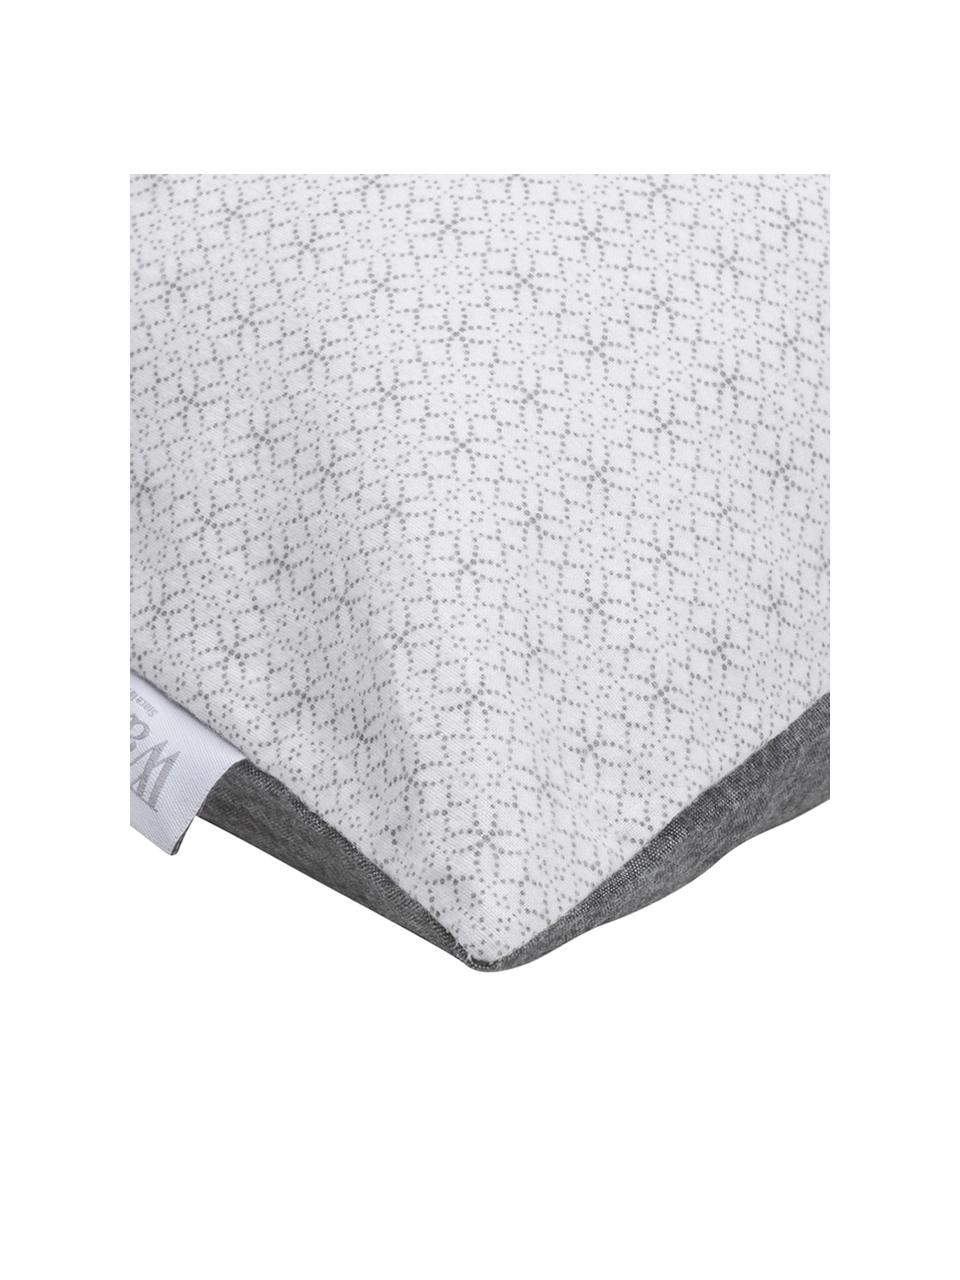 Flanelová vzorovaná obojstranná posteľná bielizeň Morton, Predná strana: biela, antracitová<br>Zadná strana: antracitová